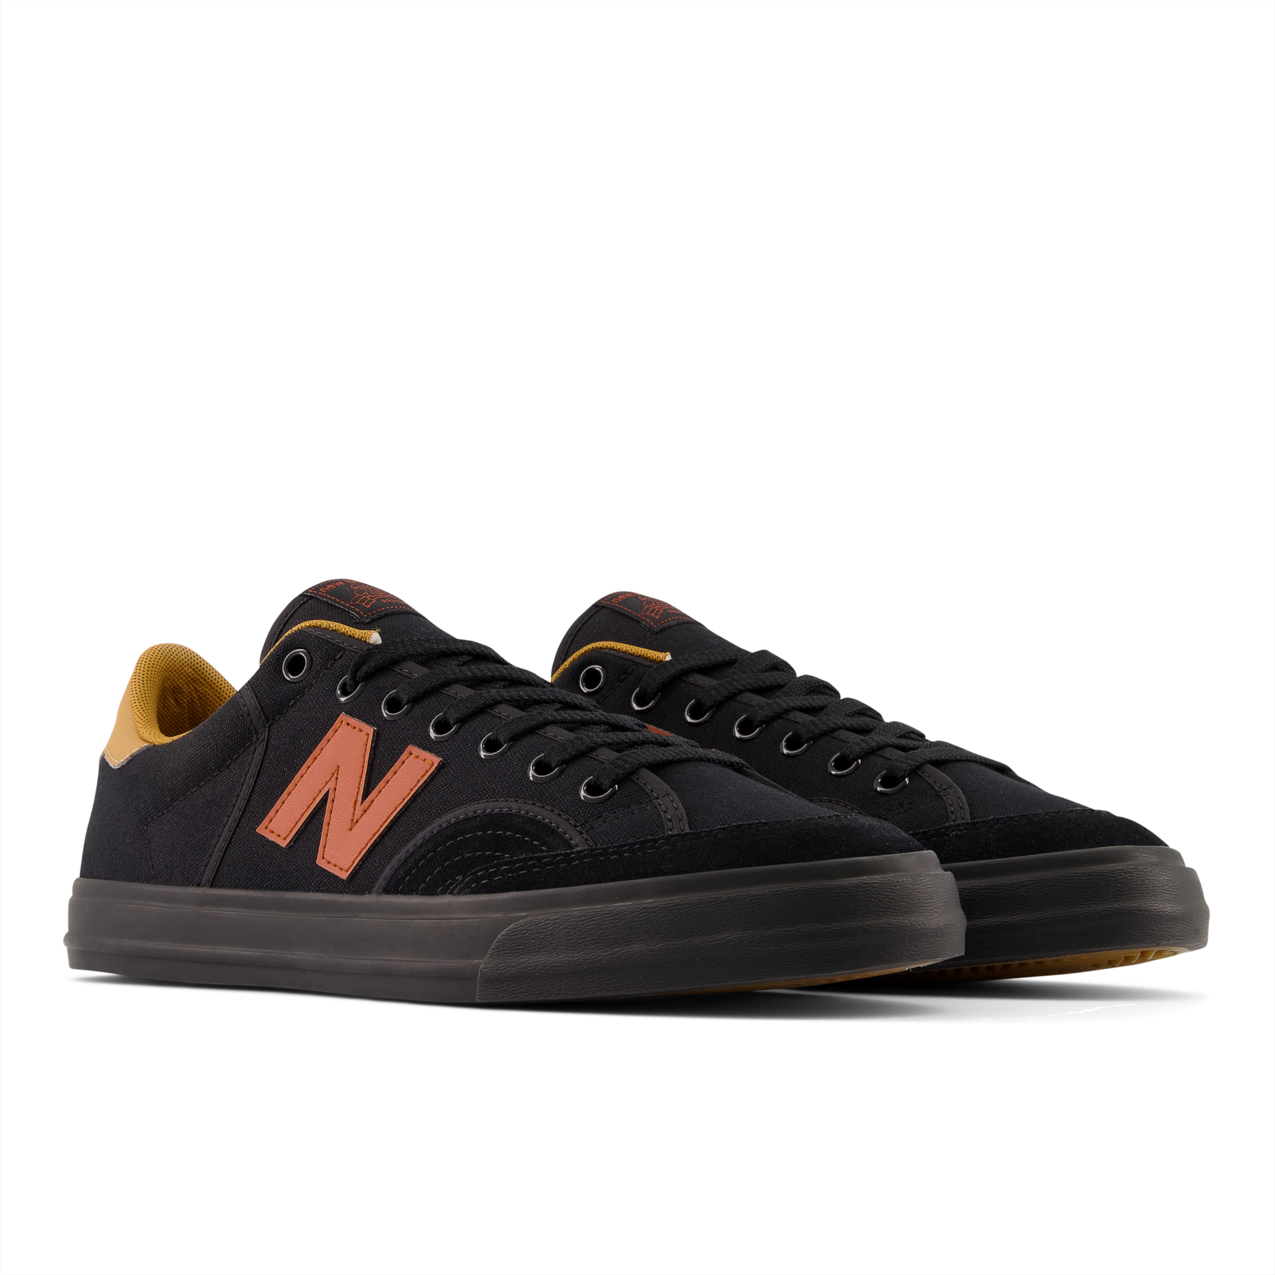 New Balance Numeric Men's 212 Pro Court Black Rust Oxide Shoes